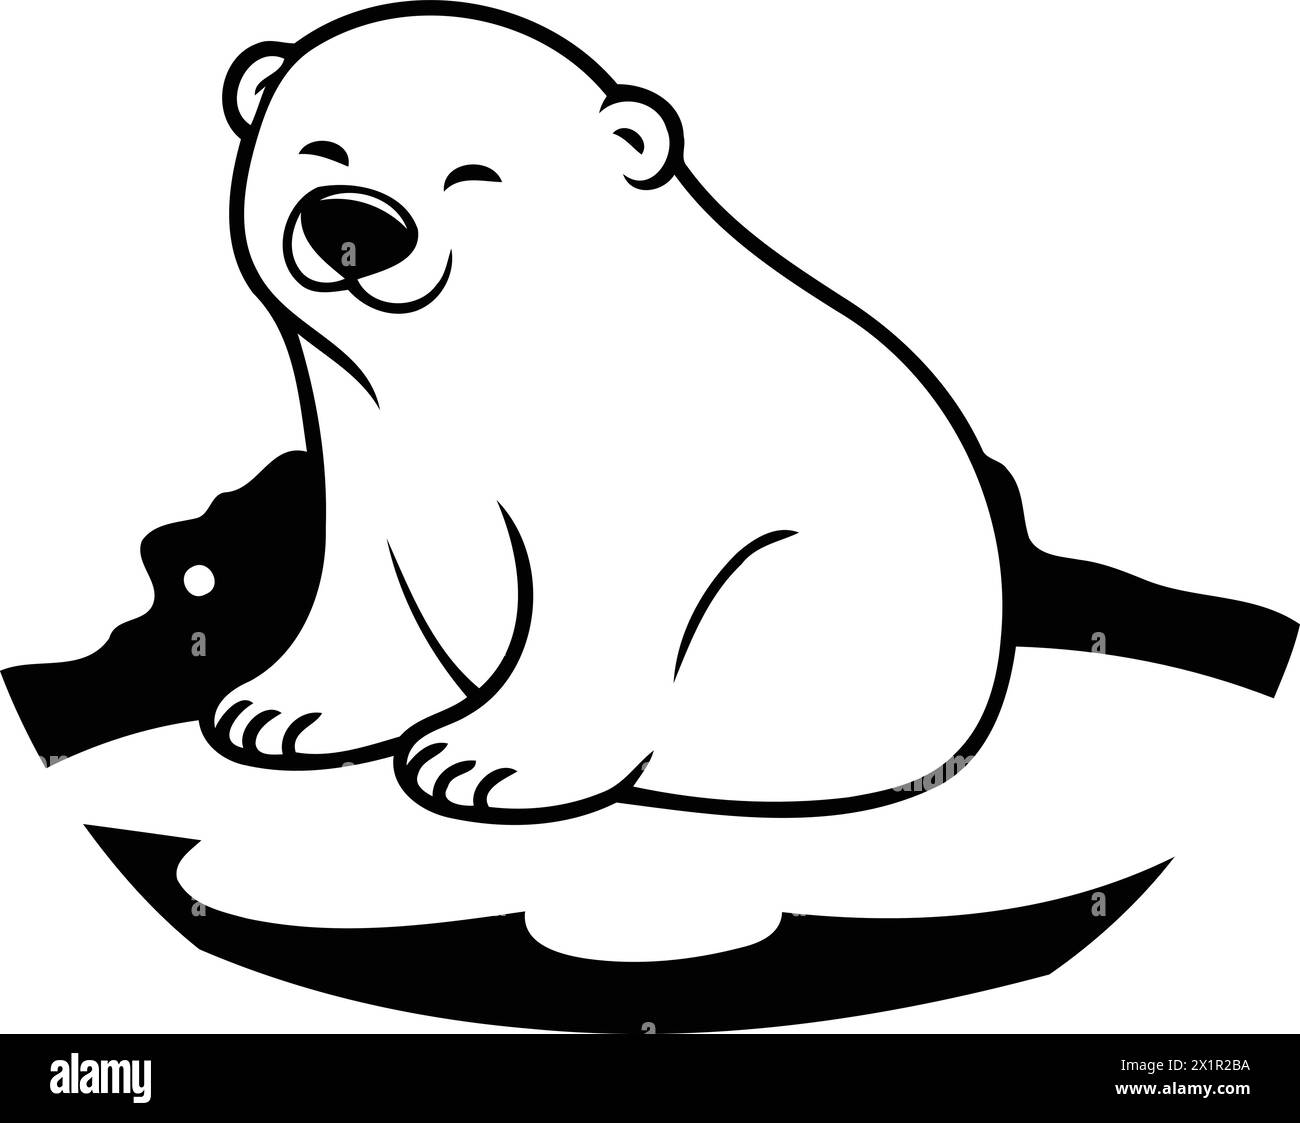 Polar bear on the snow. Vector illustration in cartoon style. Stock Vector